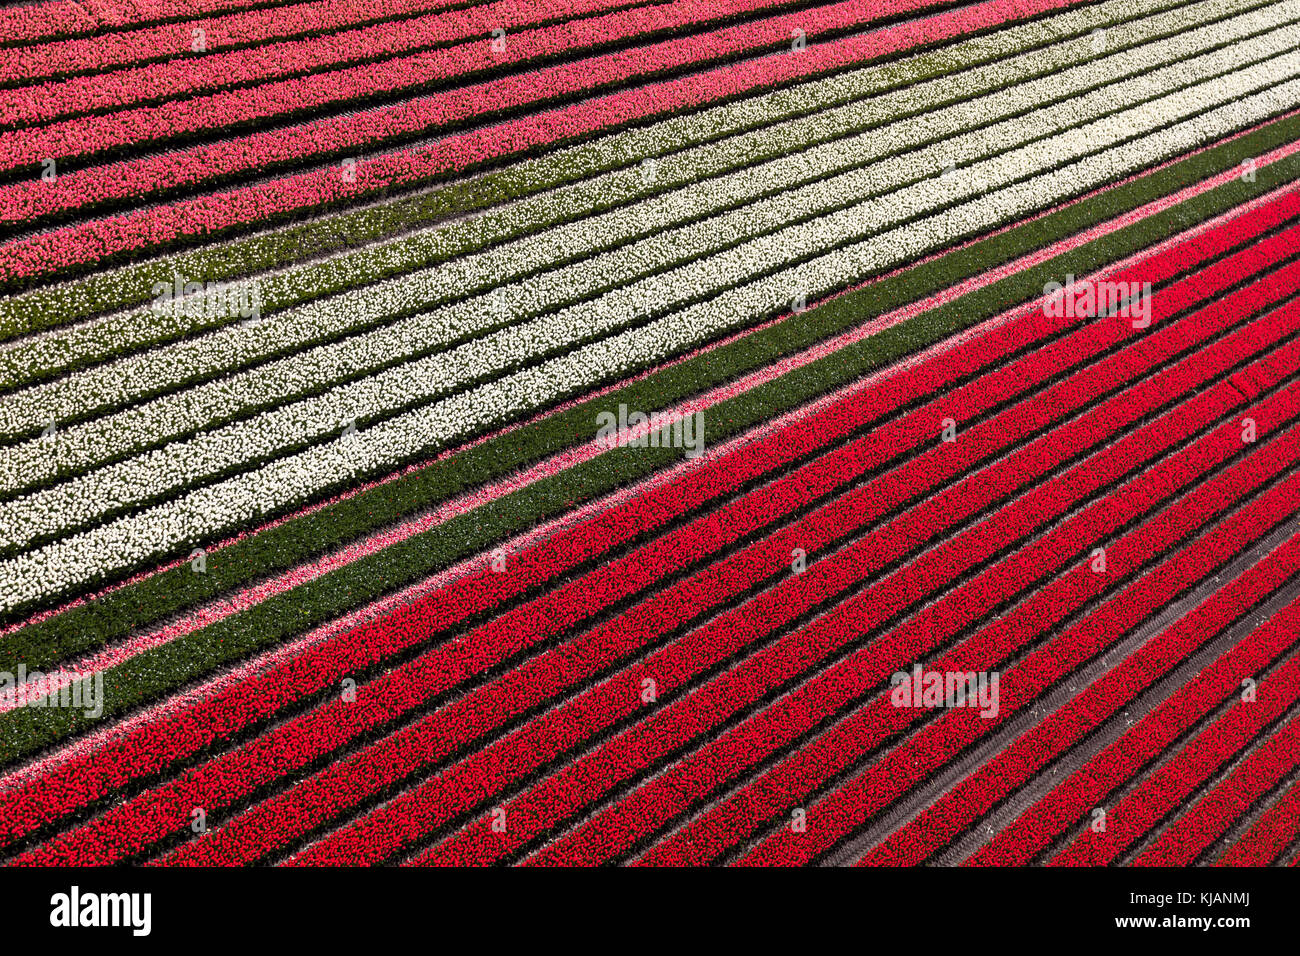 Luftaufnahme der Tulpenfelder in Nordholland, Niederlande Stockfoto